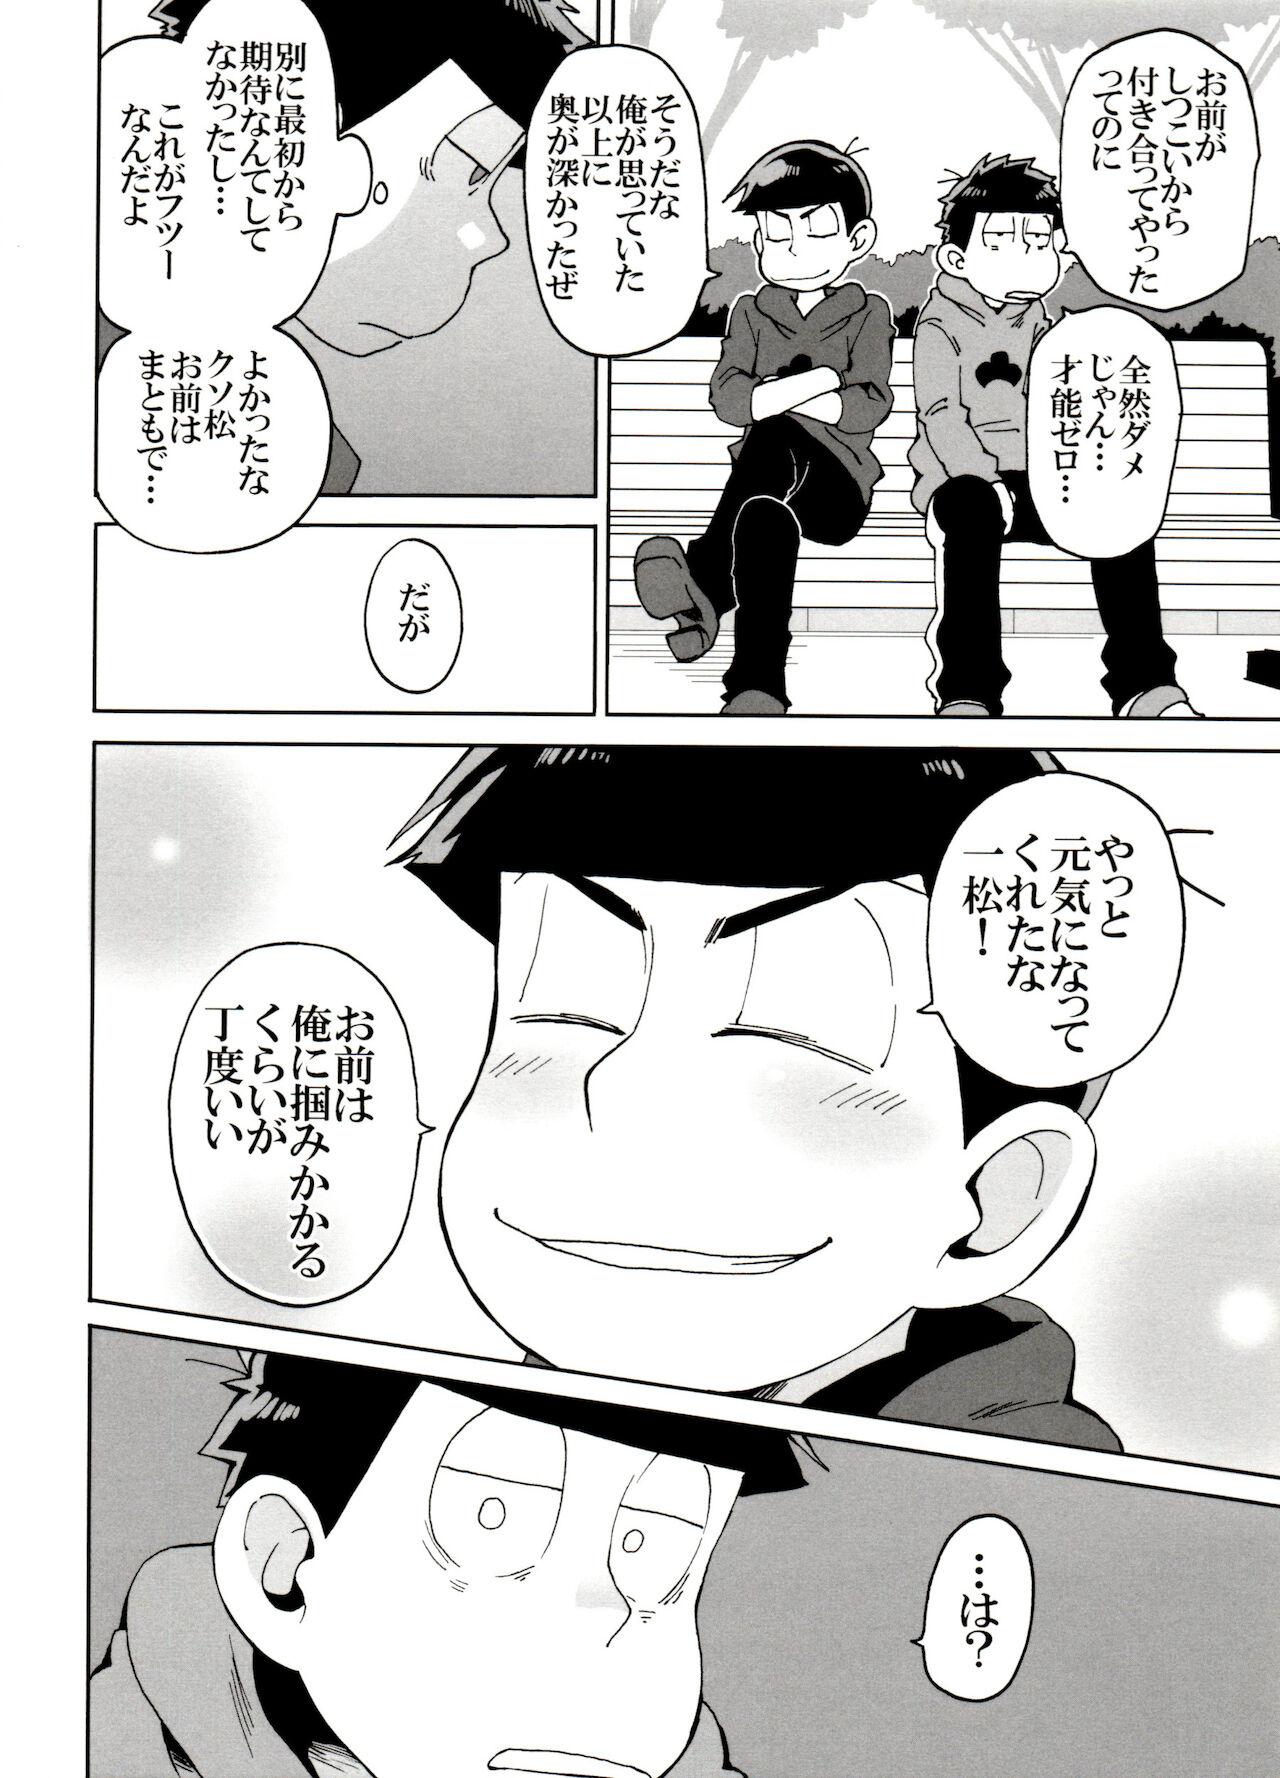 Hung SM Matsu 2 - Osomatsu san Banging - Page 12